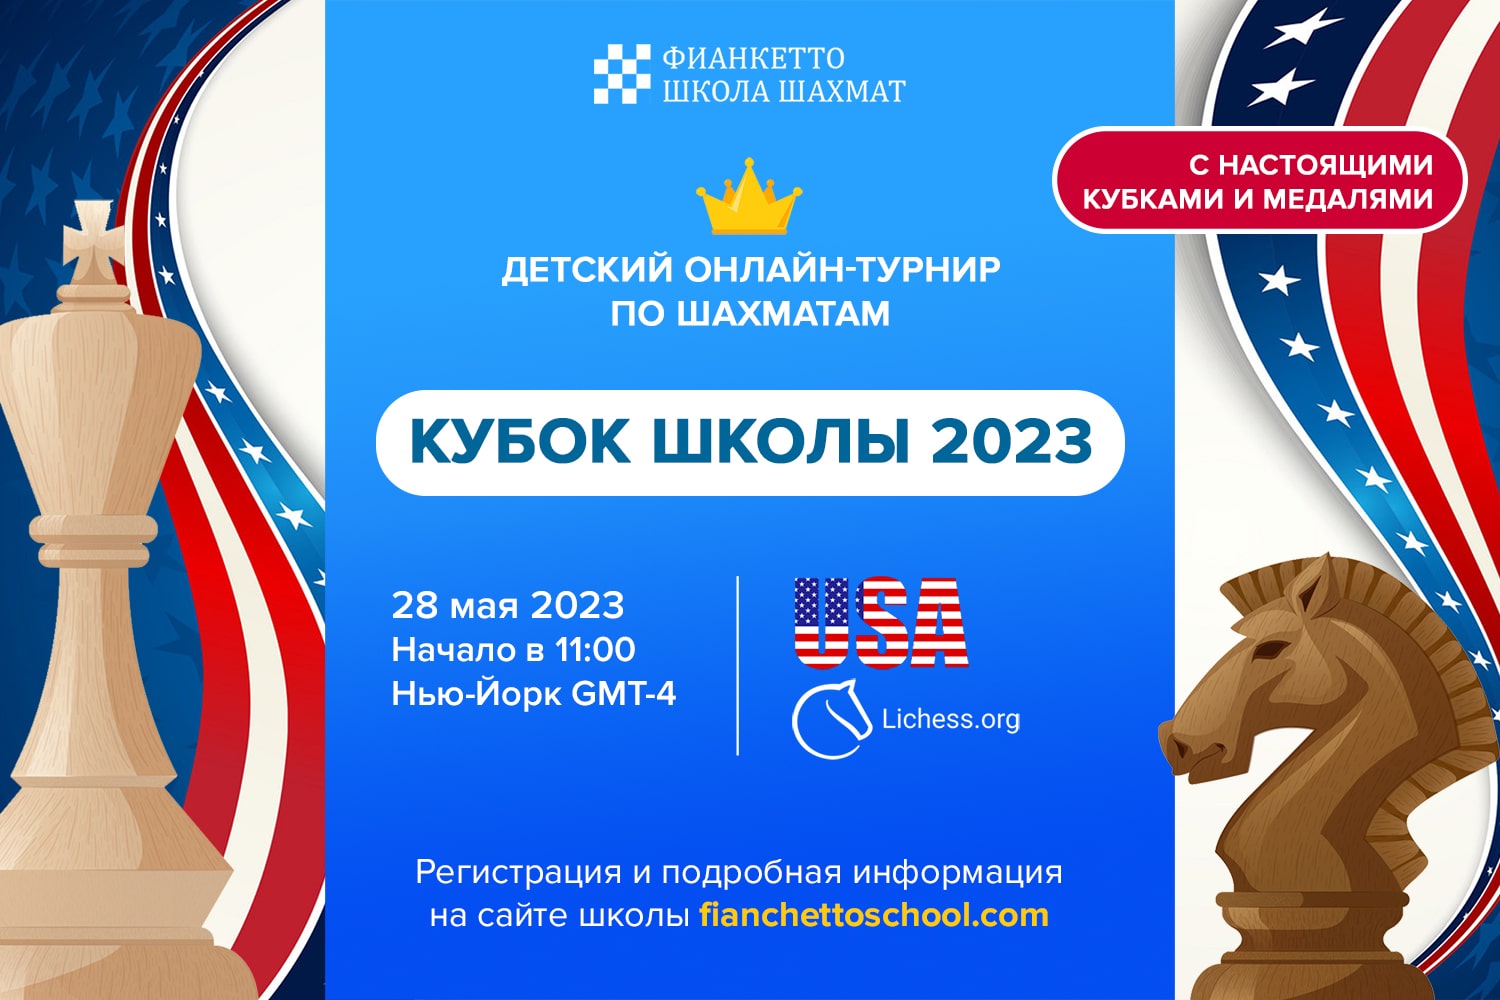 Кубок Фианкетто 2023 USA - онлайн-турнир по шахматам